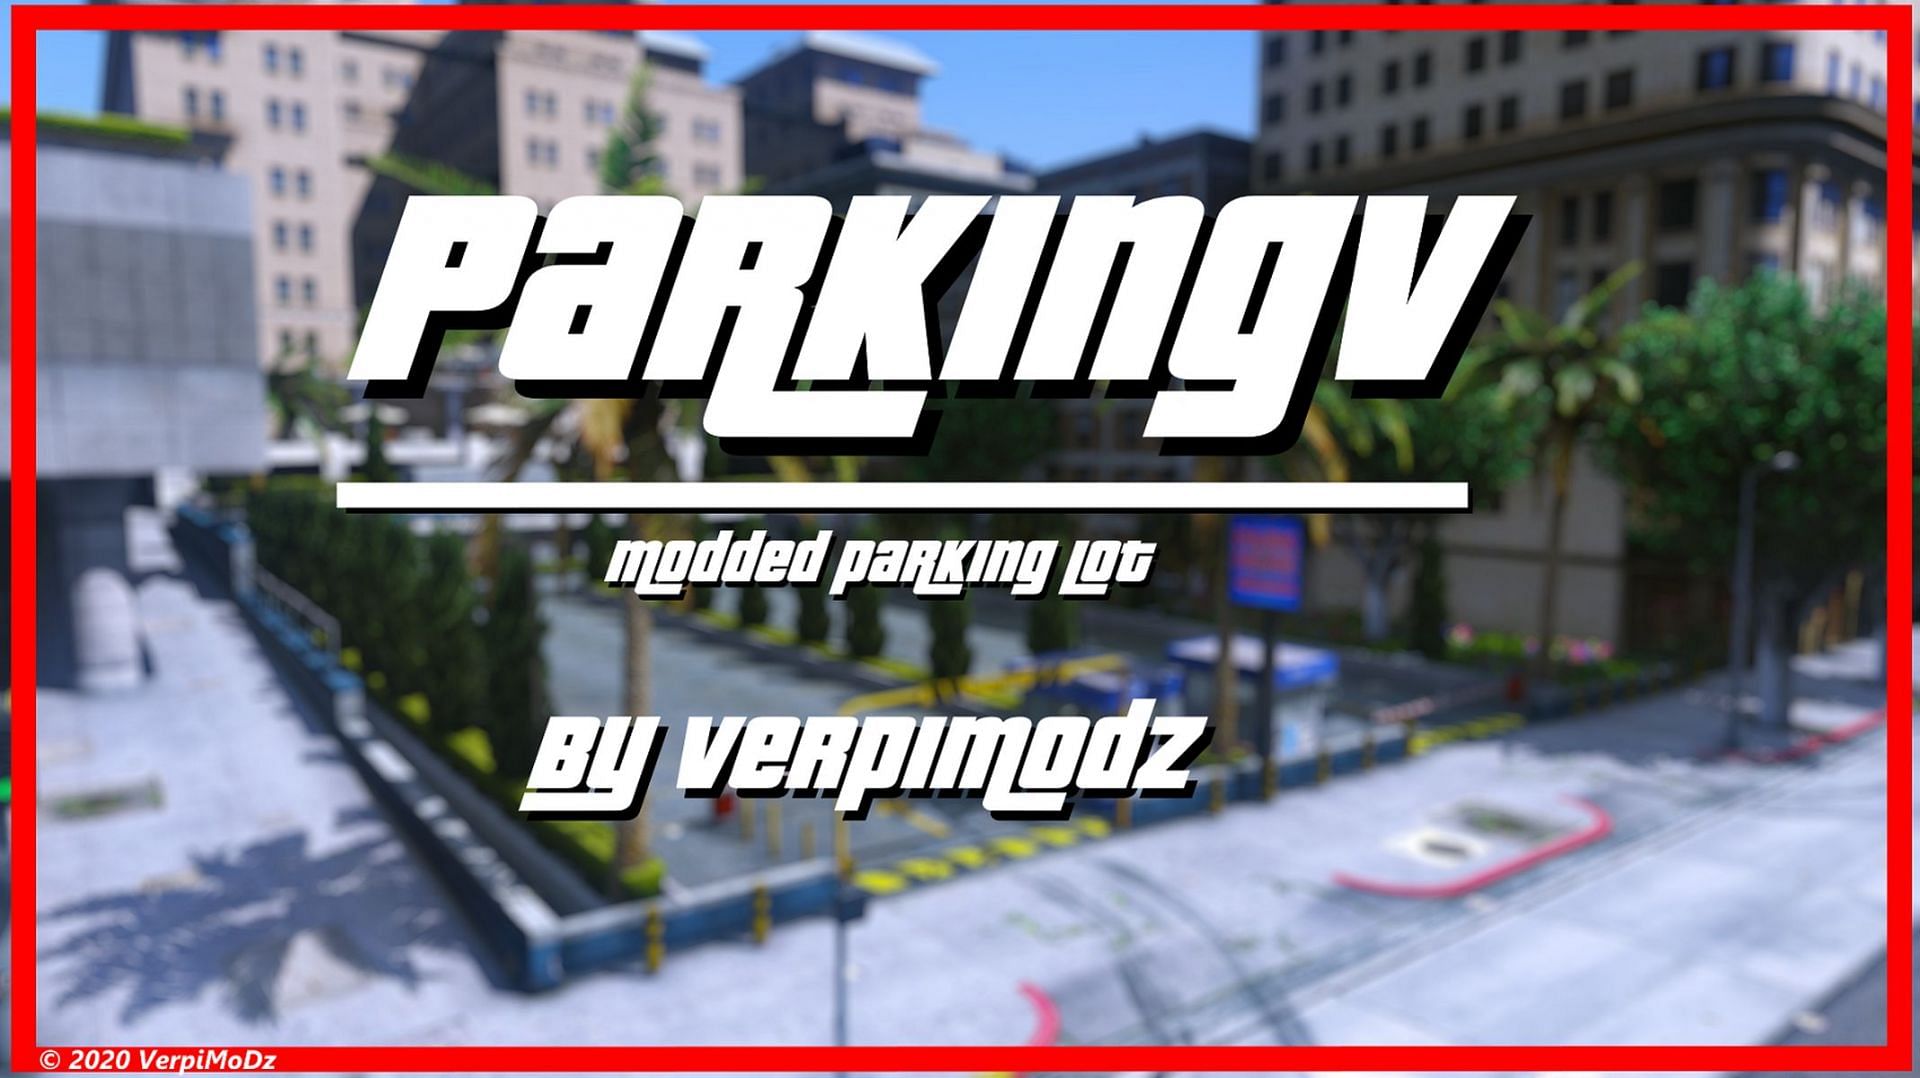 ParkingV was made by VerpiMoDz (Image via GTA5-mods.com)